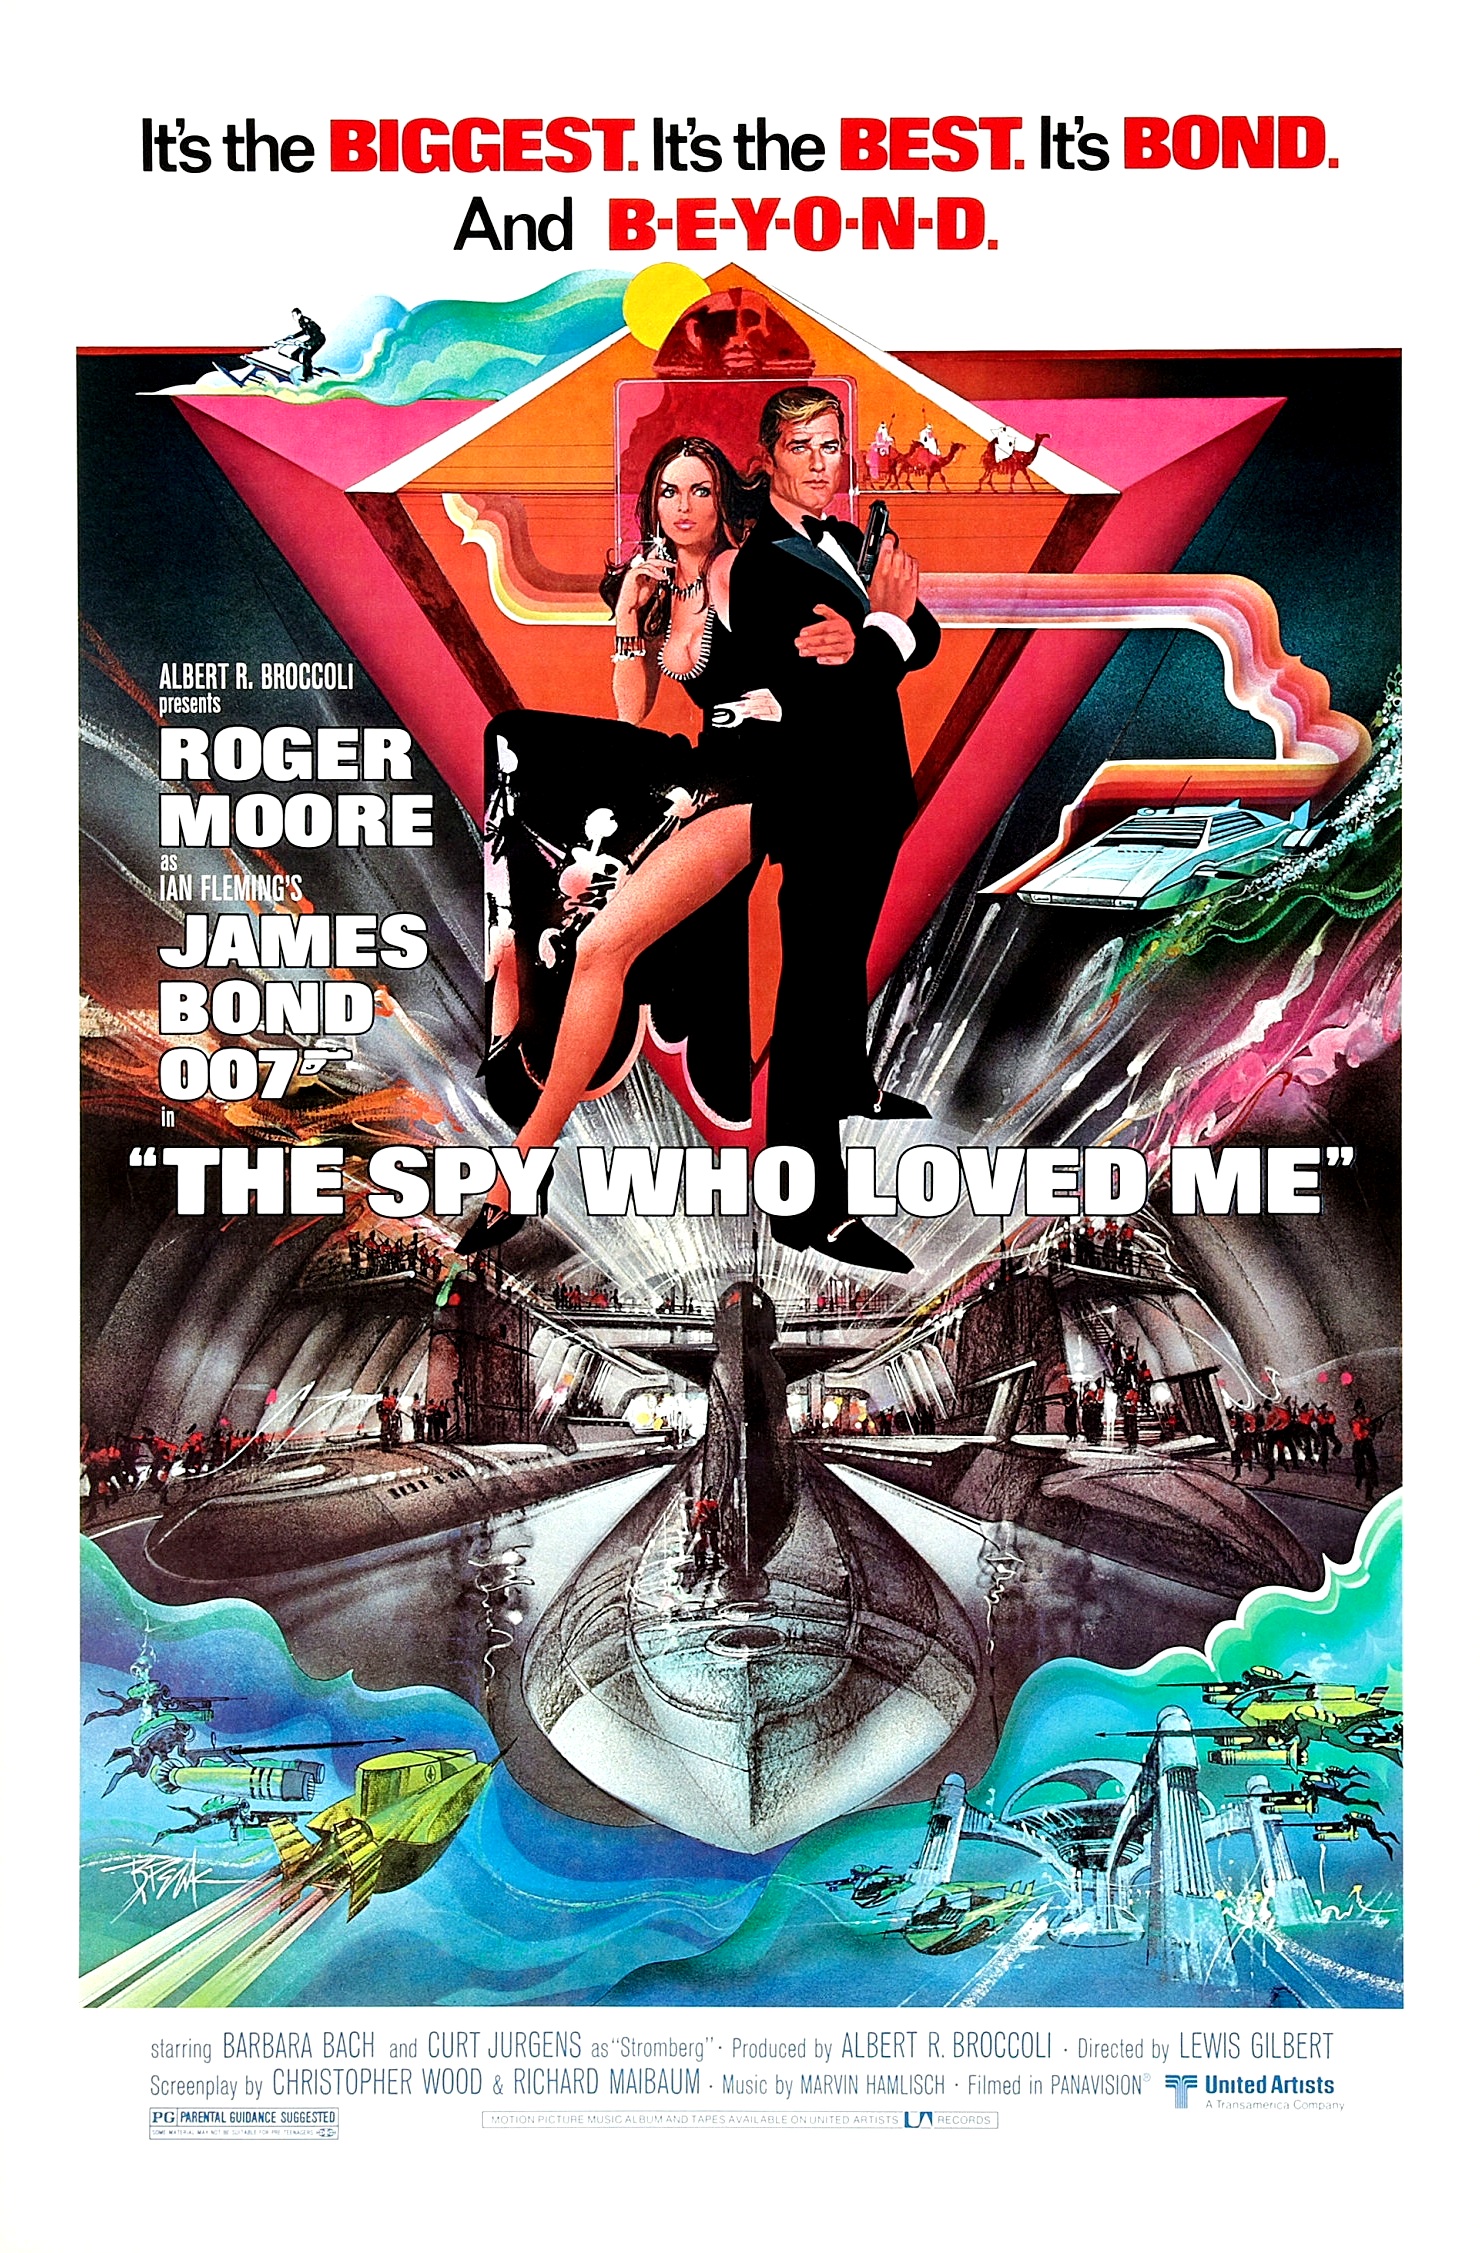 ดูหนังออนไลน์ JAMES BOND 007 THE SPY WHO LOVED ME (1977) เจมส์ บอนด์ 007 ภาค 10: พยัคฆ์ร้ายสุดที่รัก หนังมาสเตอร์ หนังเต็มเรื่อง ดูหนังฟรีออนไลน์ ดูหนังออนไลน์ หนังออนไลน์ ดูหนังใหม่ หนังพากย์ไทย หนังซับไทย ดูฟรีHD